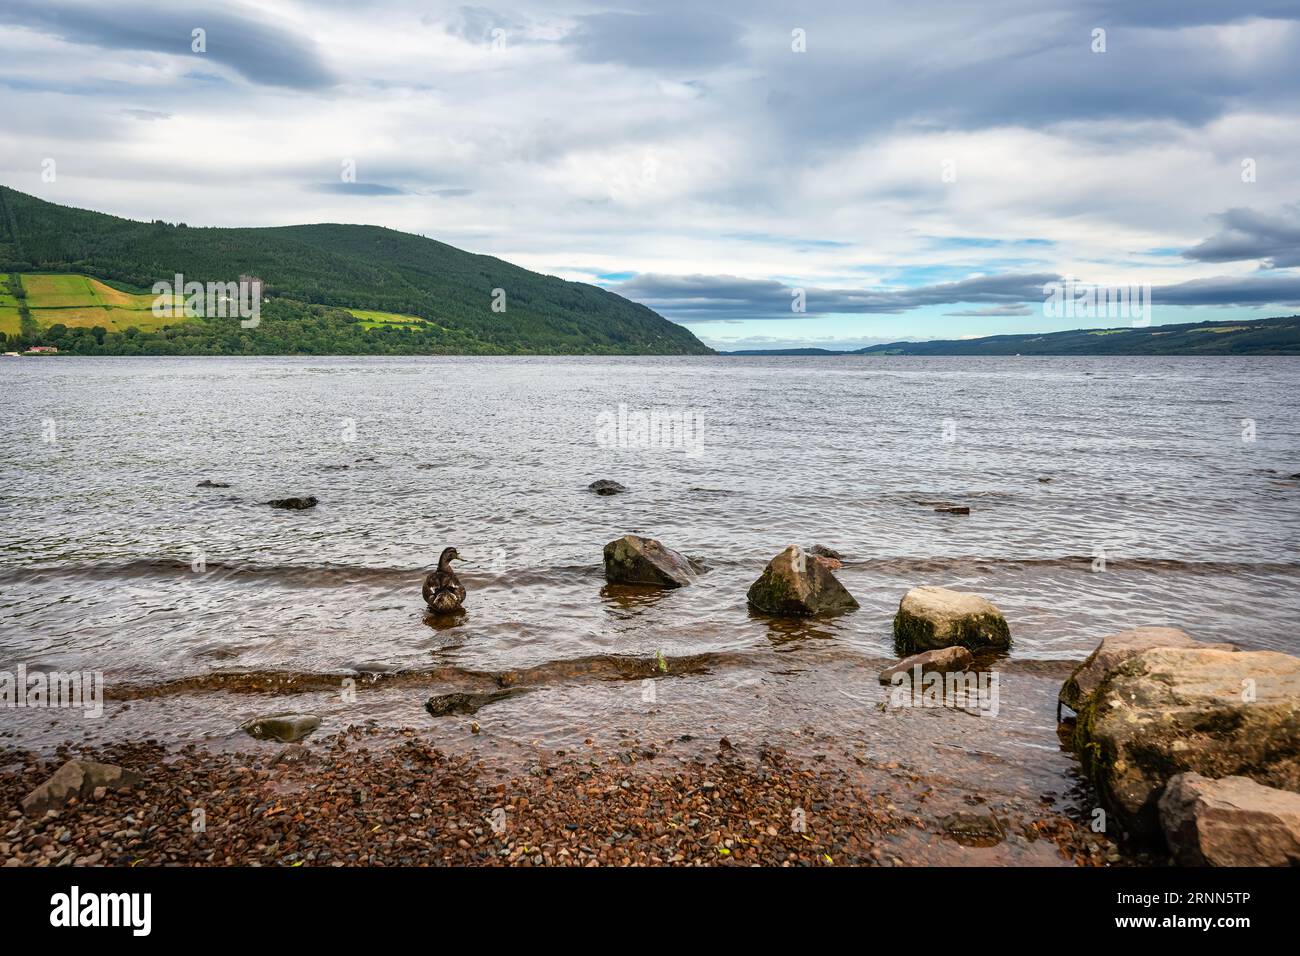 Rivage du Loch Ness en Ecosse, plein de végétation et d'arbres, lac célèbre pour son monstre Nessi. Banque D'Images